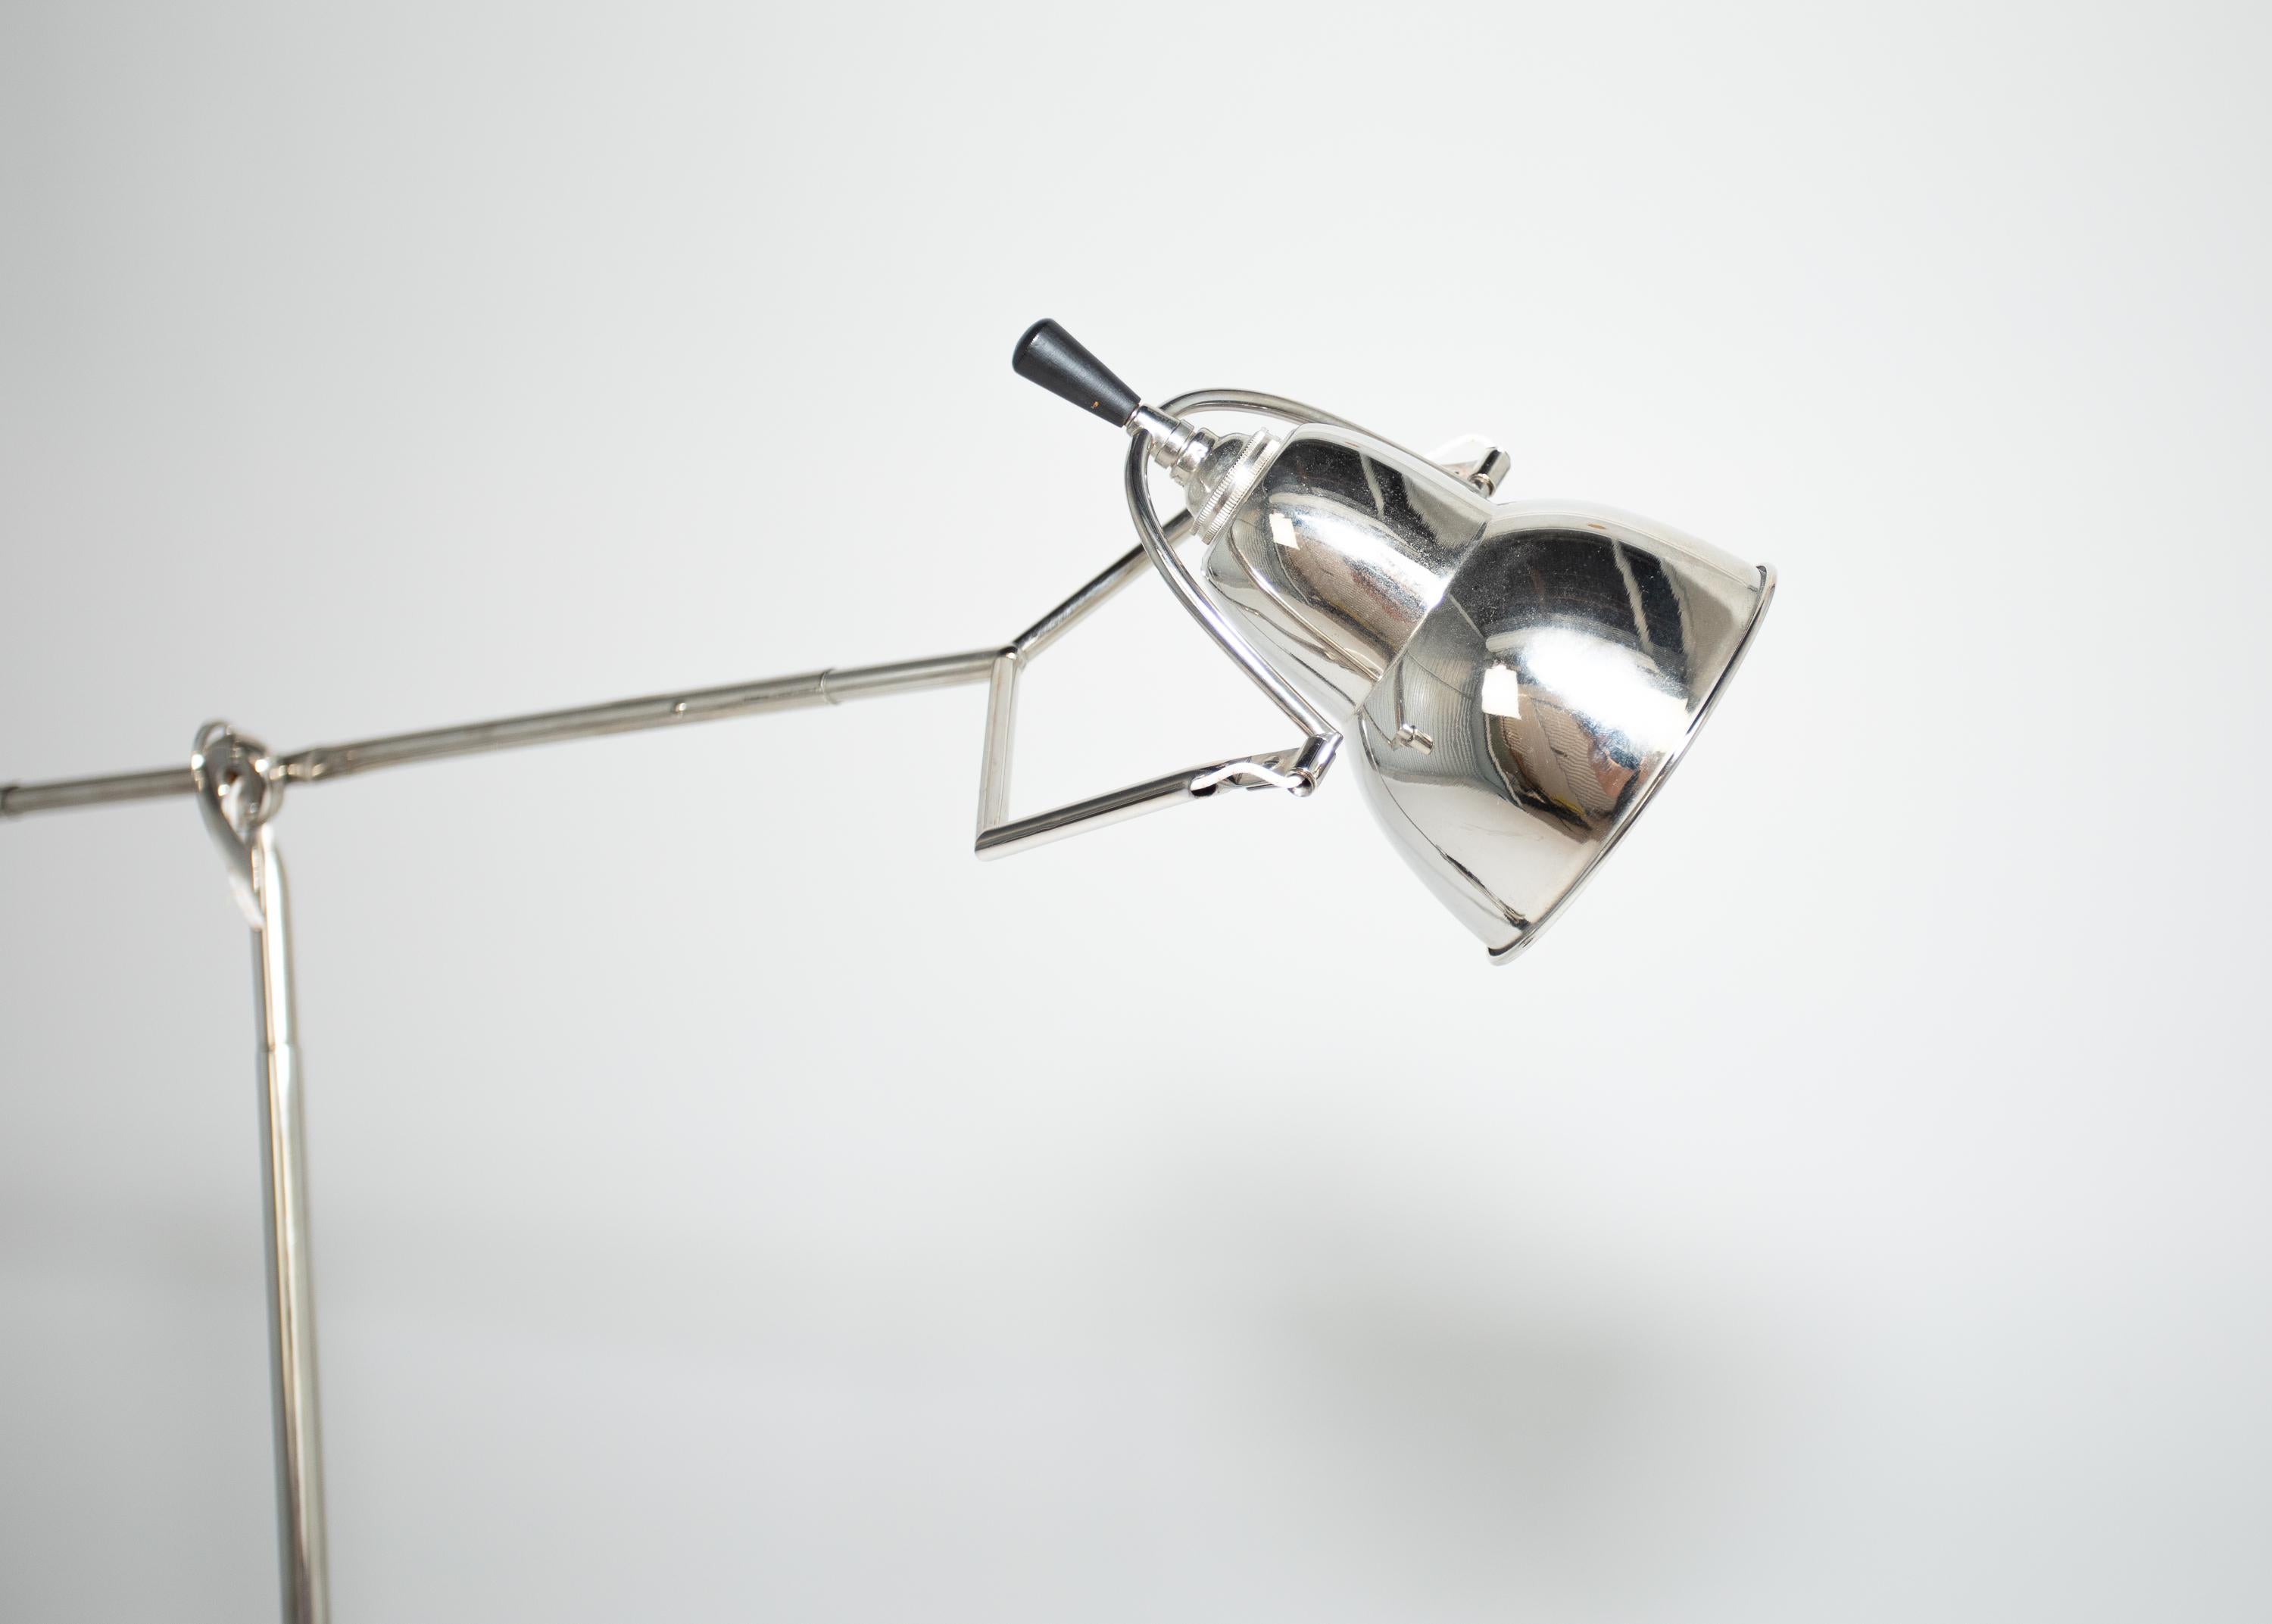 Lampe de table vintage Edouard Wilfred Buquet.
Belle surface en nickel
Muli positional 
Label présent